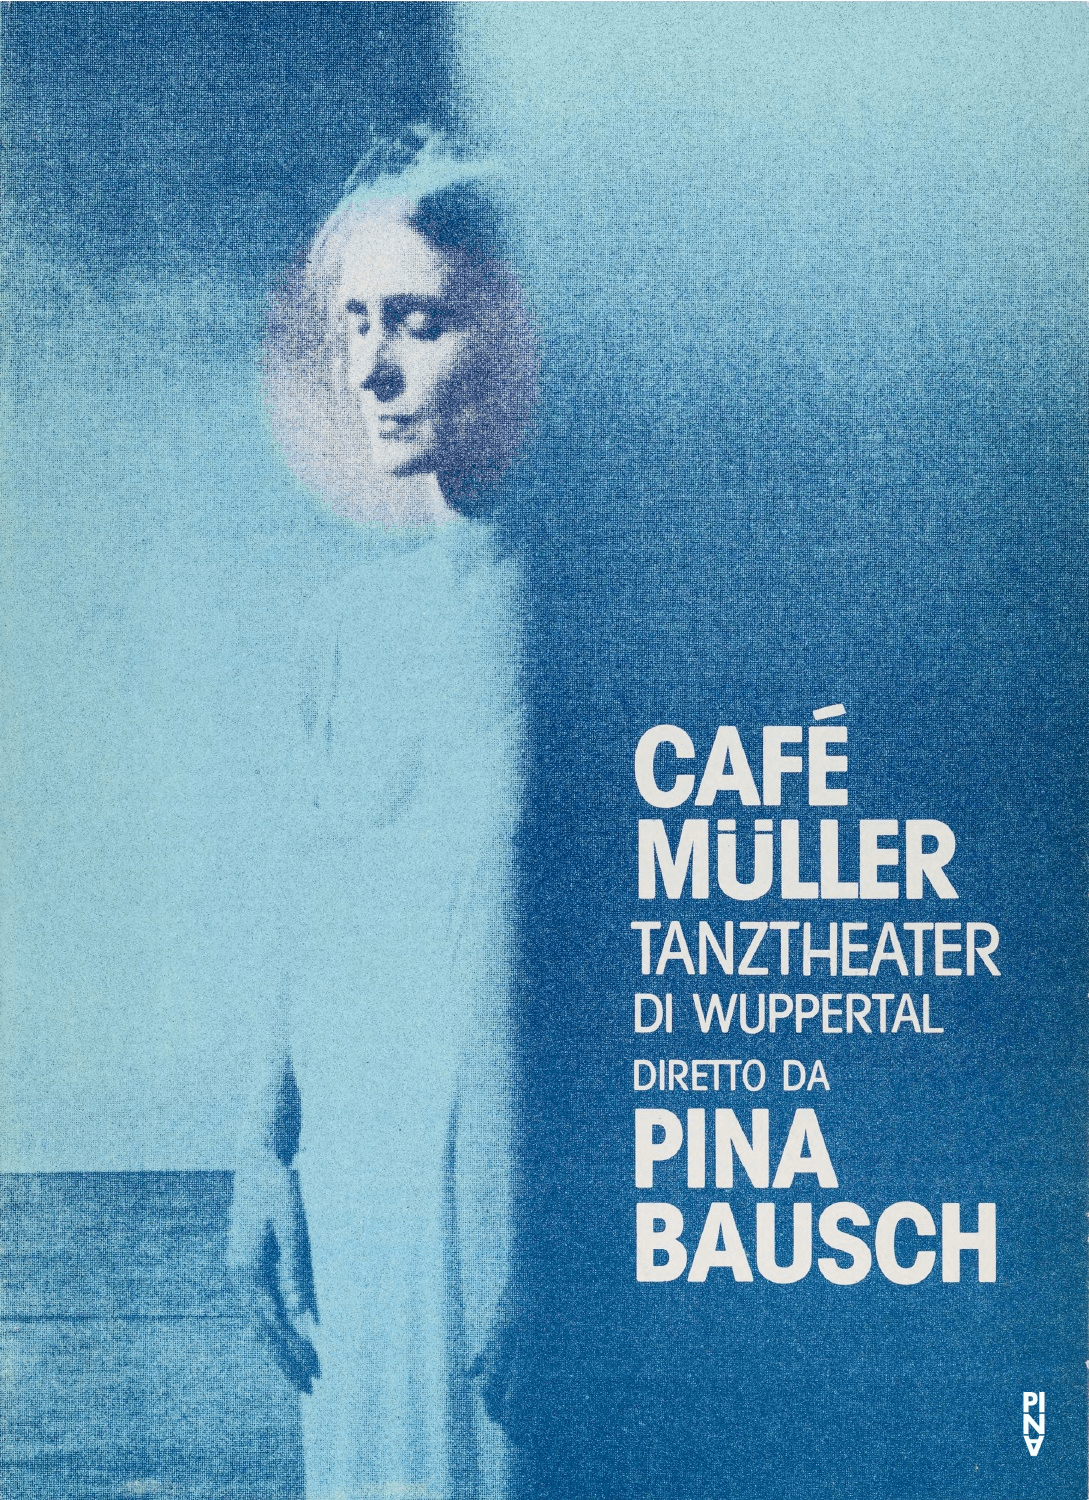 Programme pour « Café Müller » de Pina Bausch avec Tanztheater Wuppertal à Sassari, 22 fév. 1984 – 23 fév. 1984